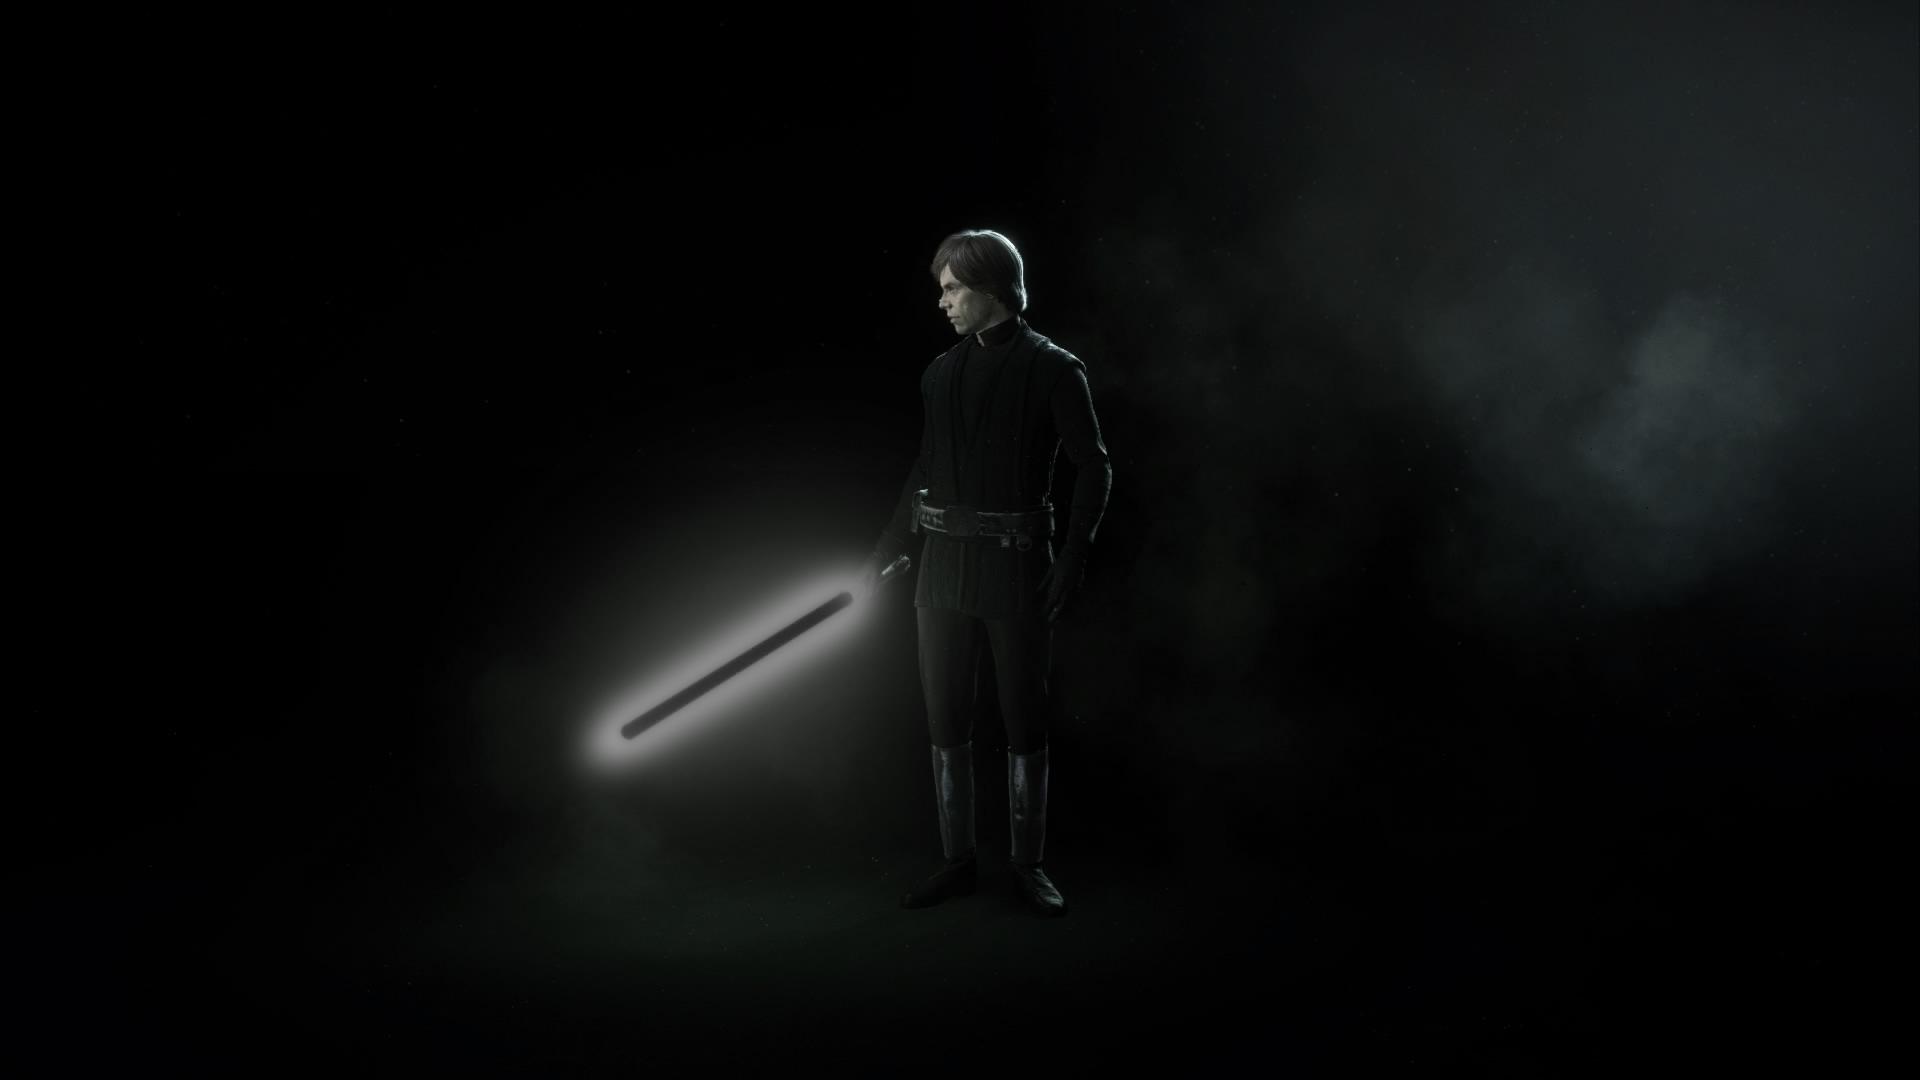 Luke Skywalker with the Dark Saber. Enjoy :)